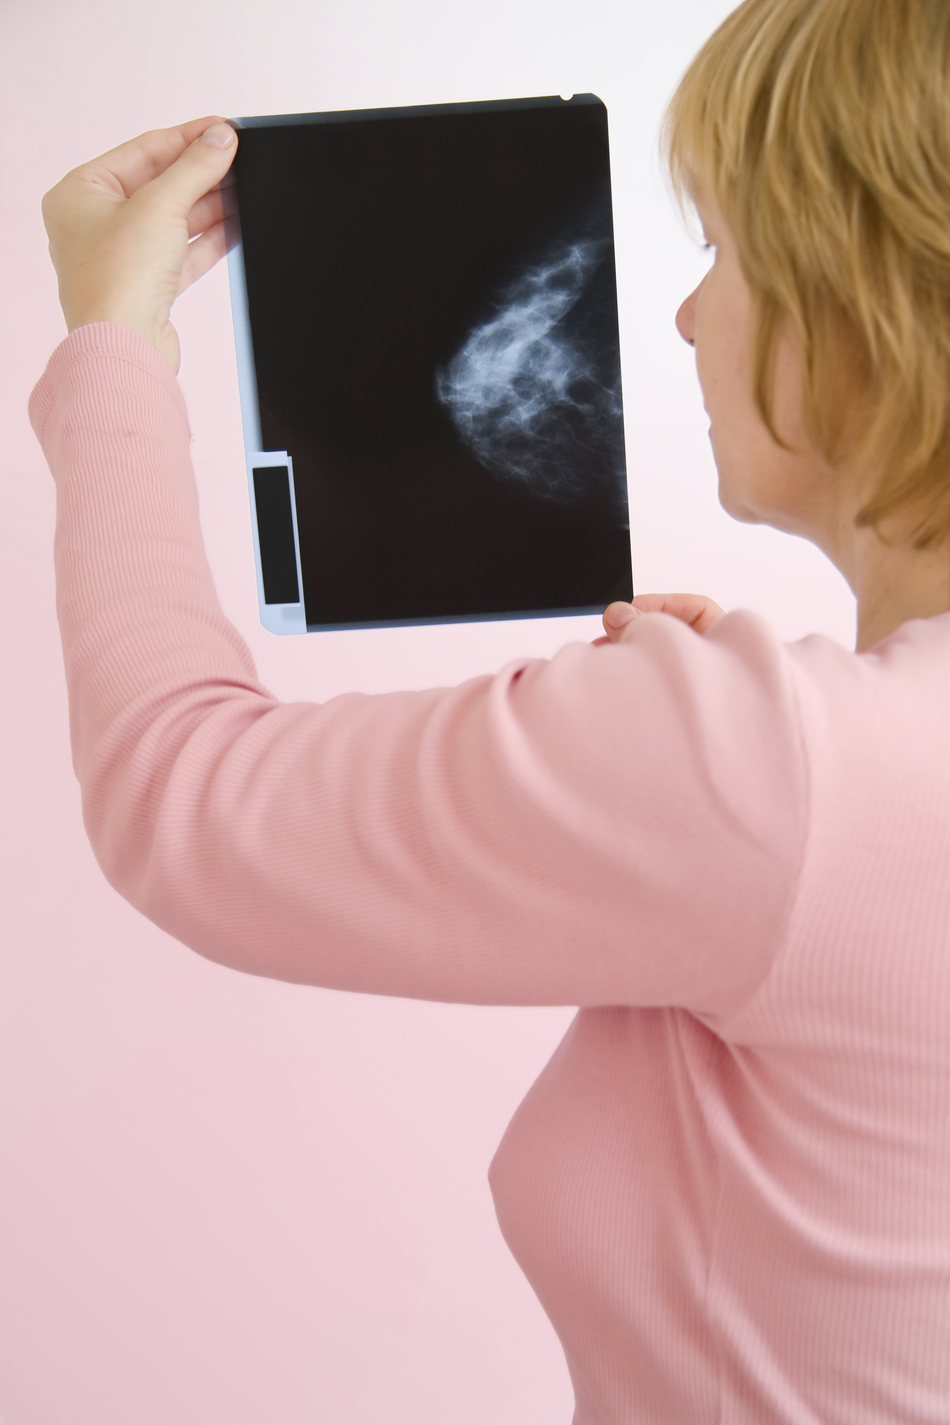 Mammograms: Screening vs. Diagnostic